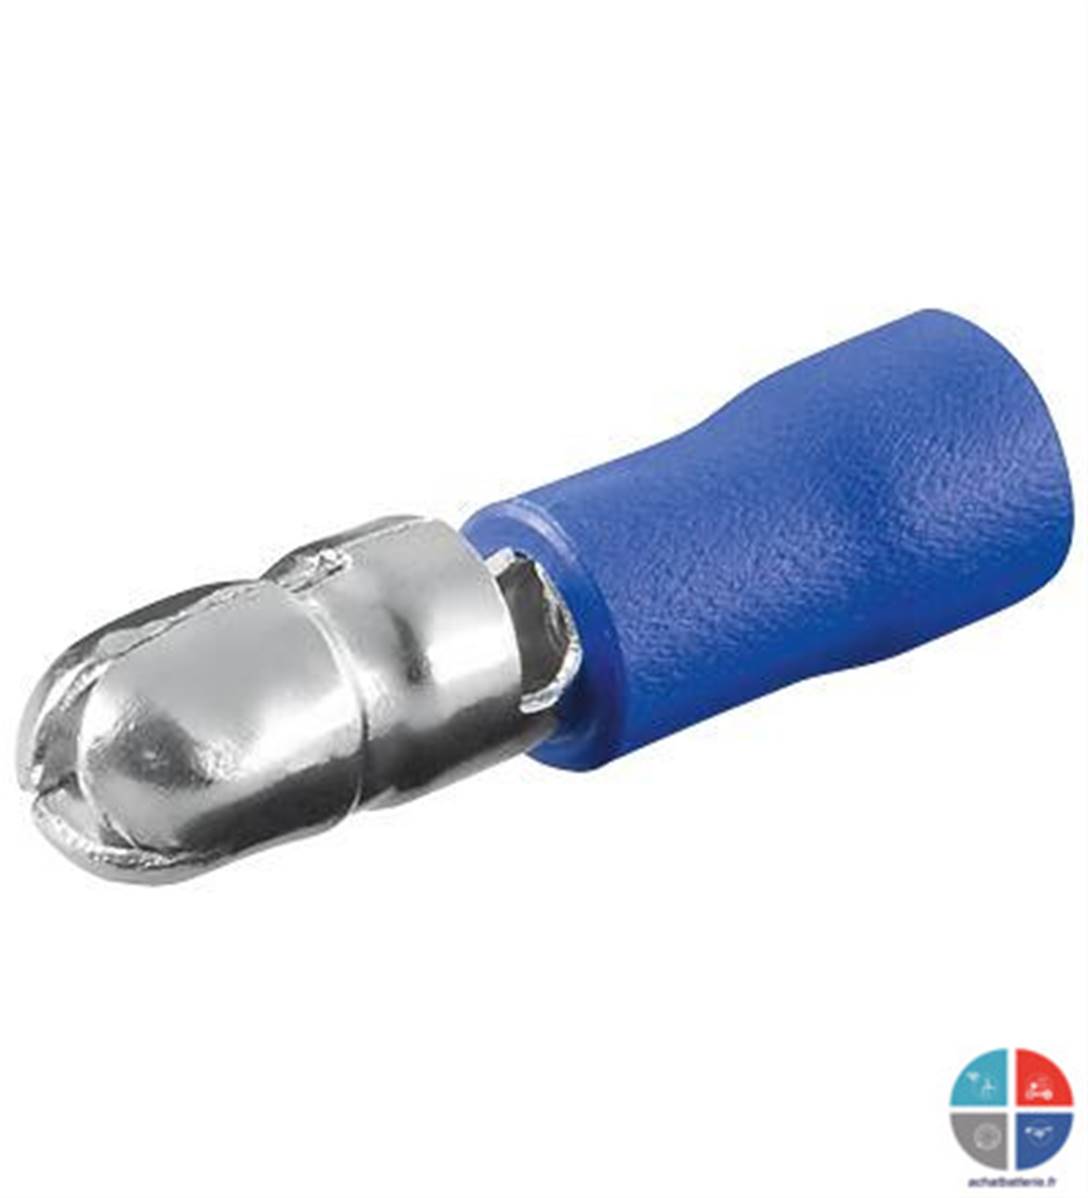 Cosses à sertir bleu TIBELEC 425030 ronde de 6.5 mm